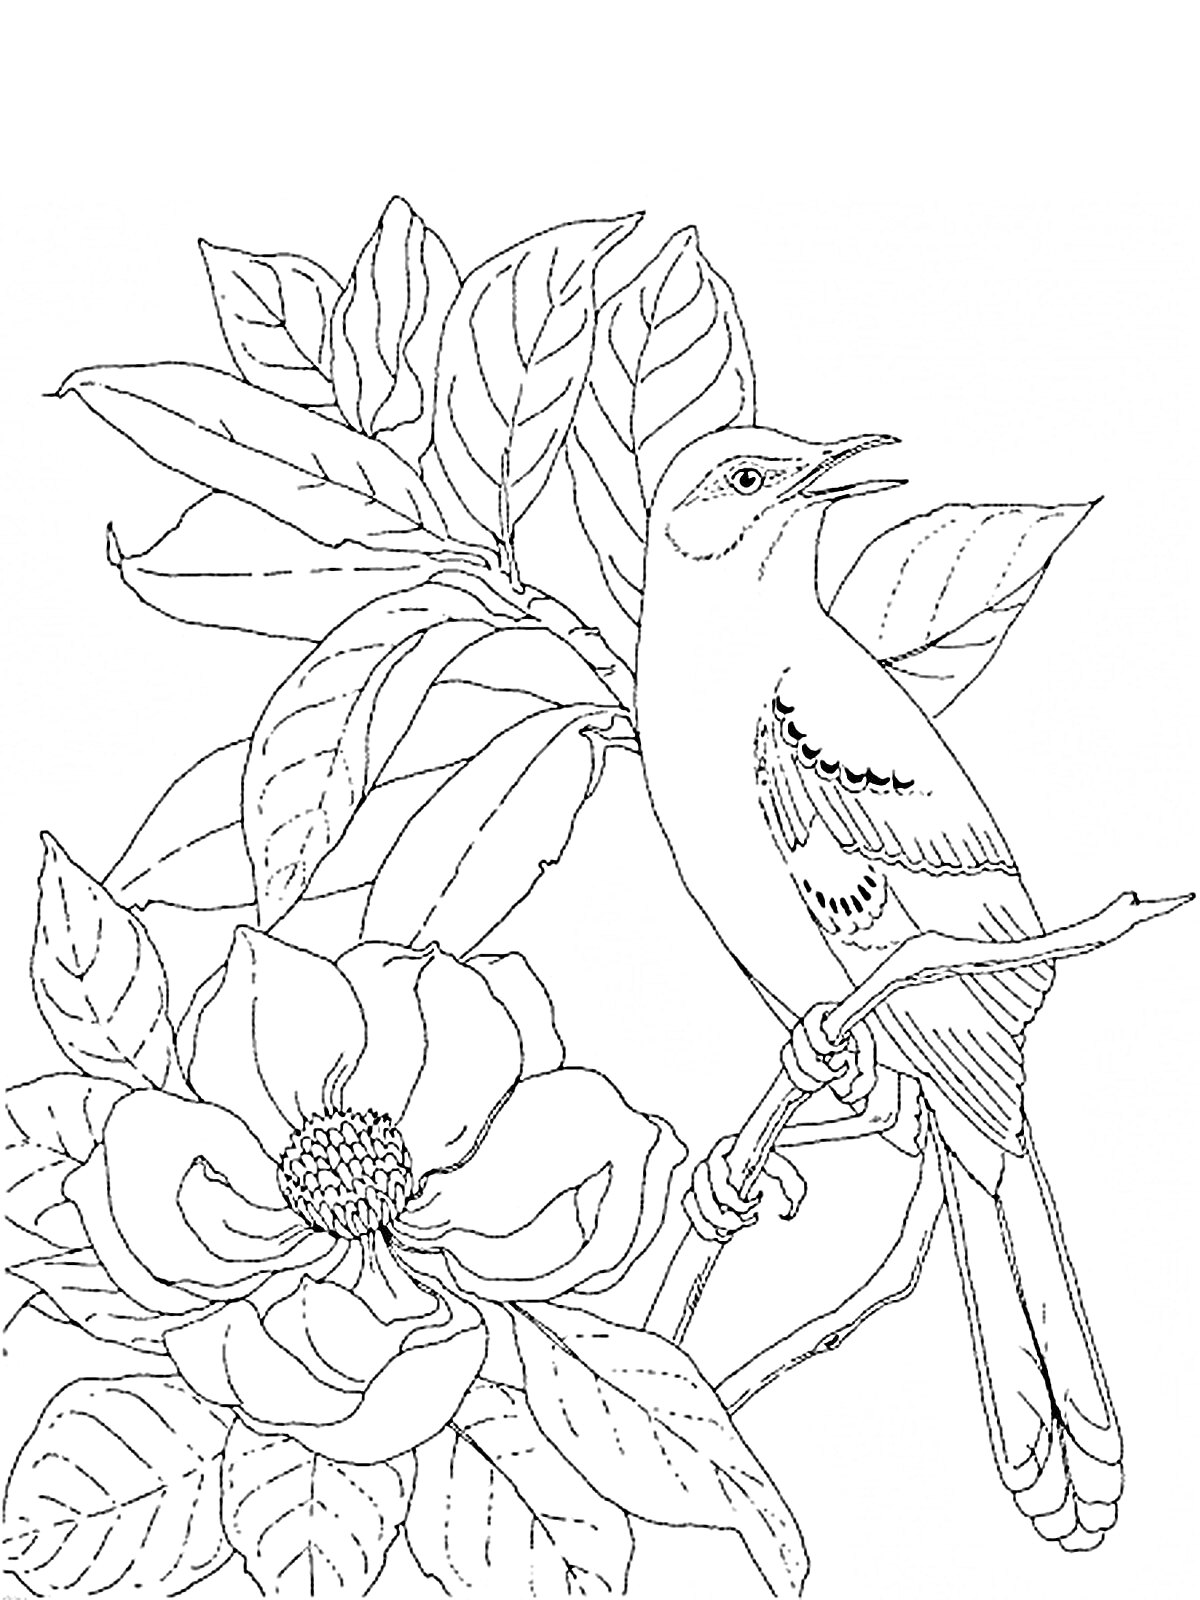 Раскраска Птица на ветке с крупными цветами и листьями